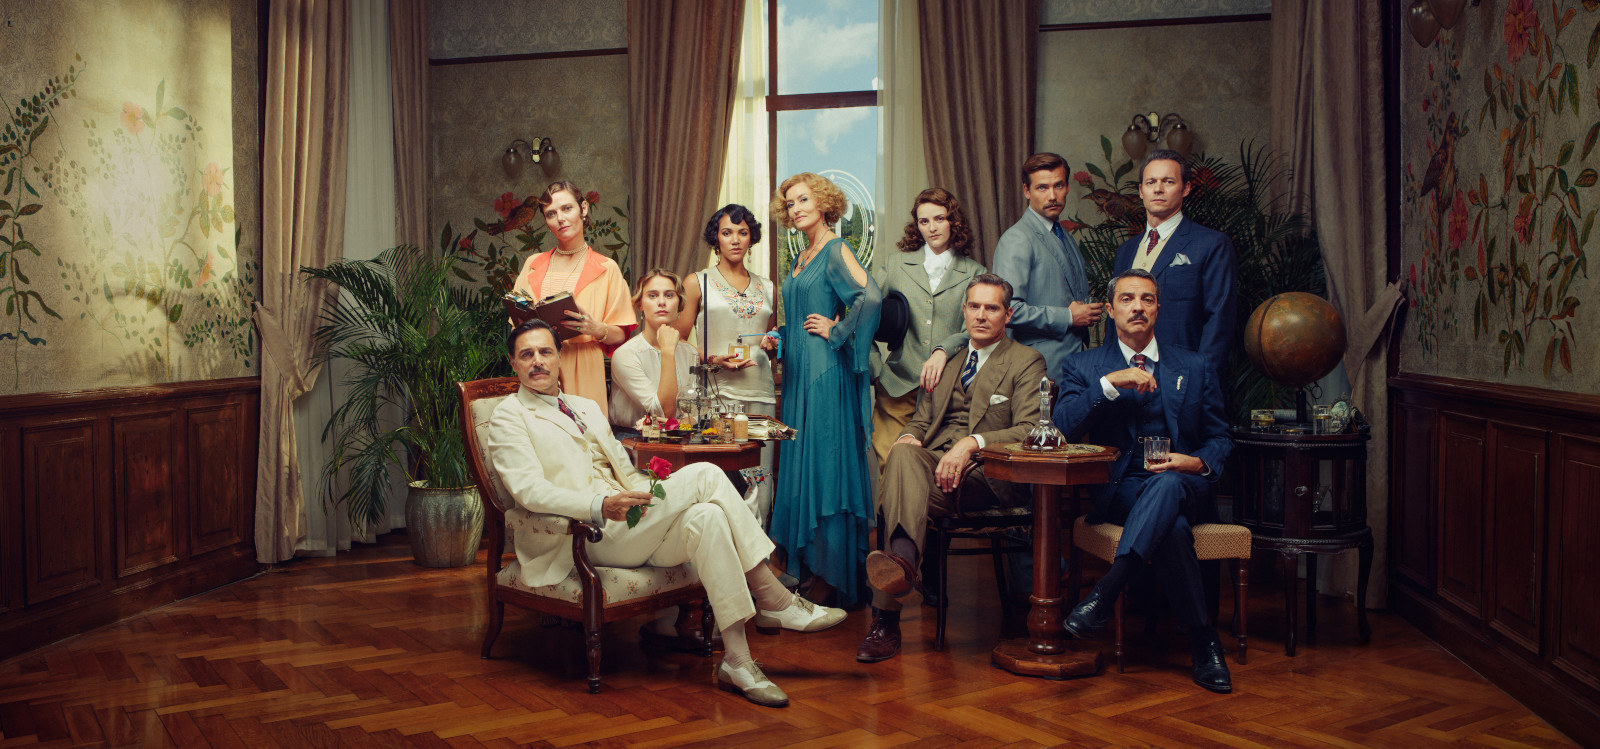 The cast of season 3 of Hotel Portofino